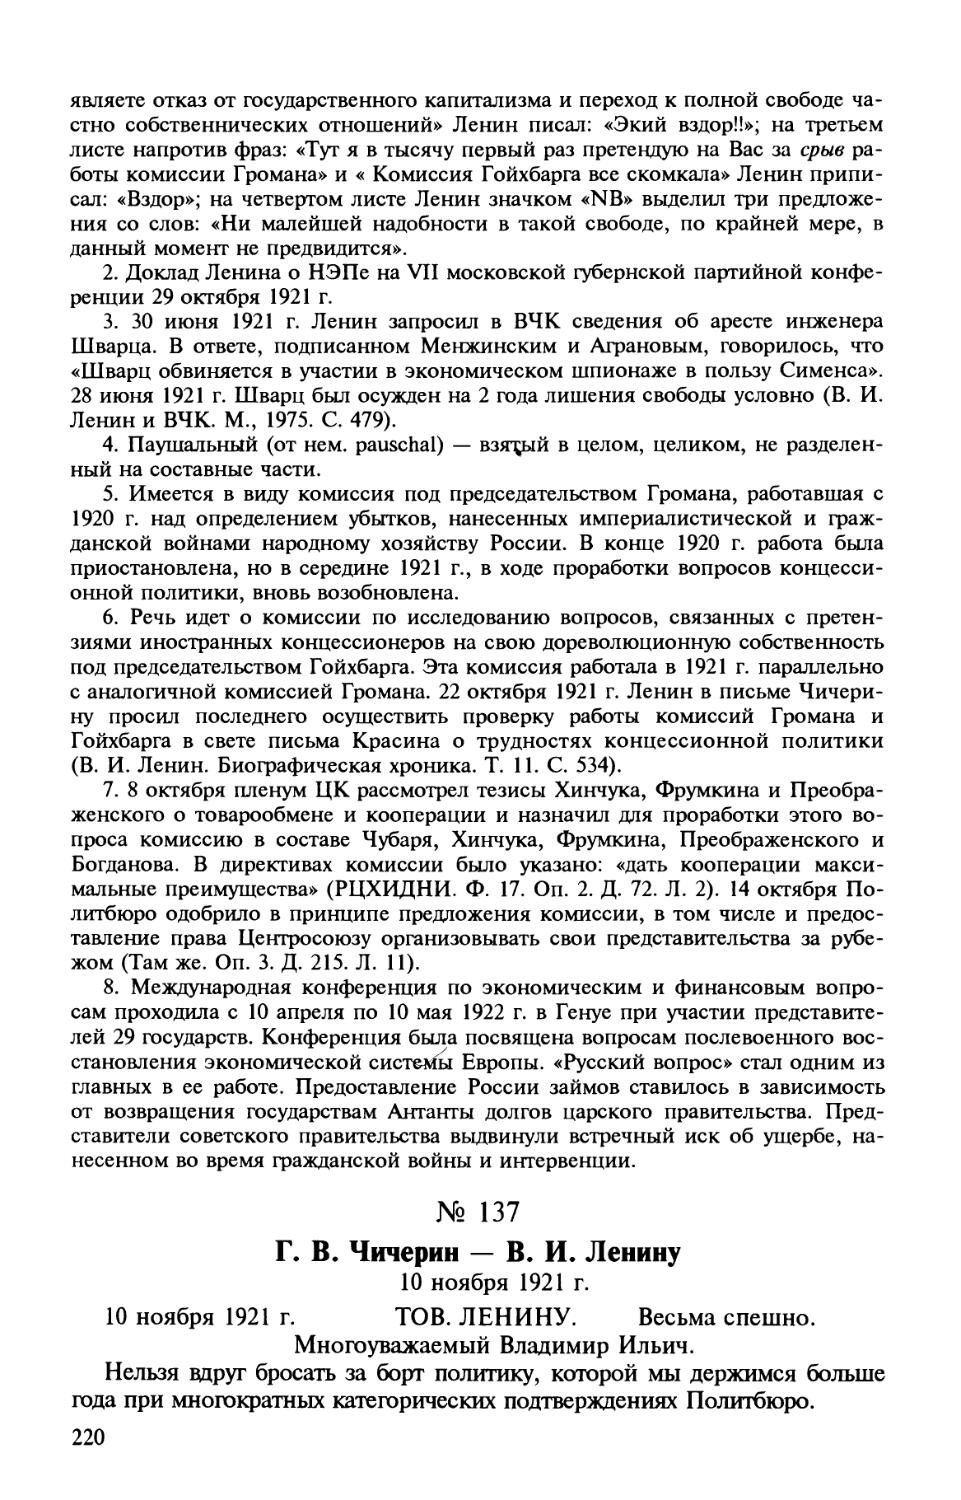 137. Г. В. Чичерин — В. И. Ленину. 10 ноября 1921 г.